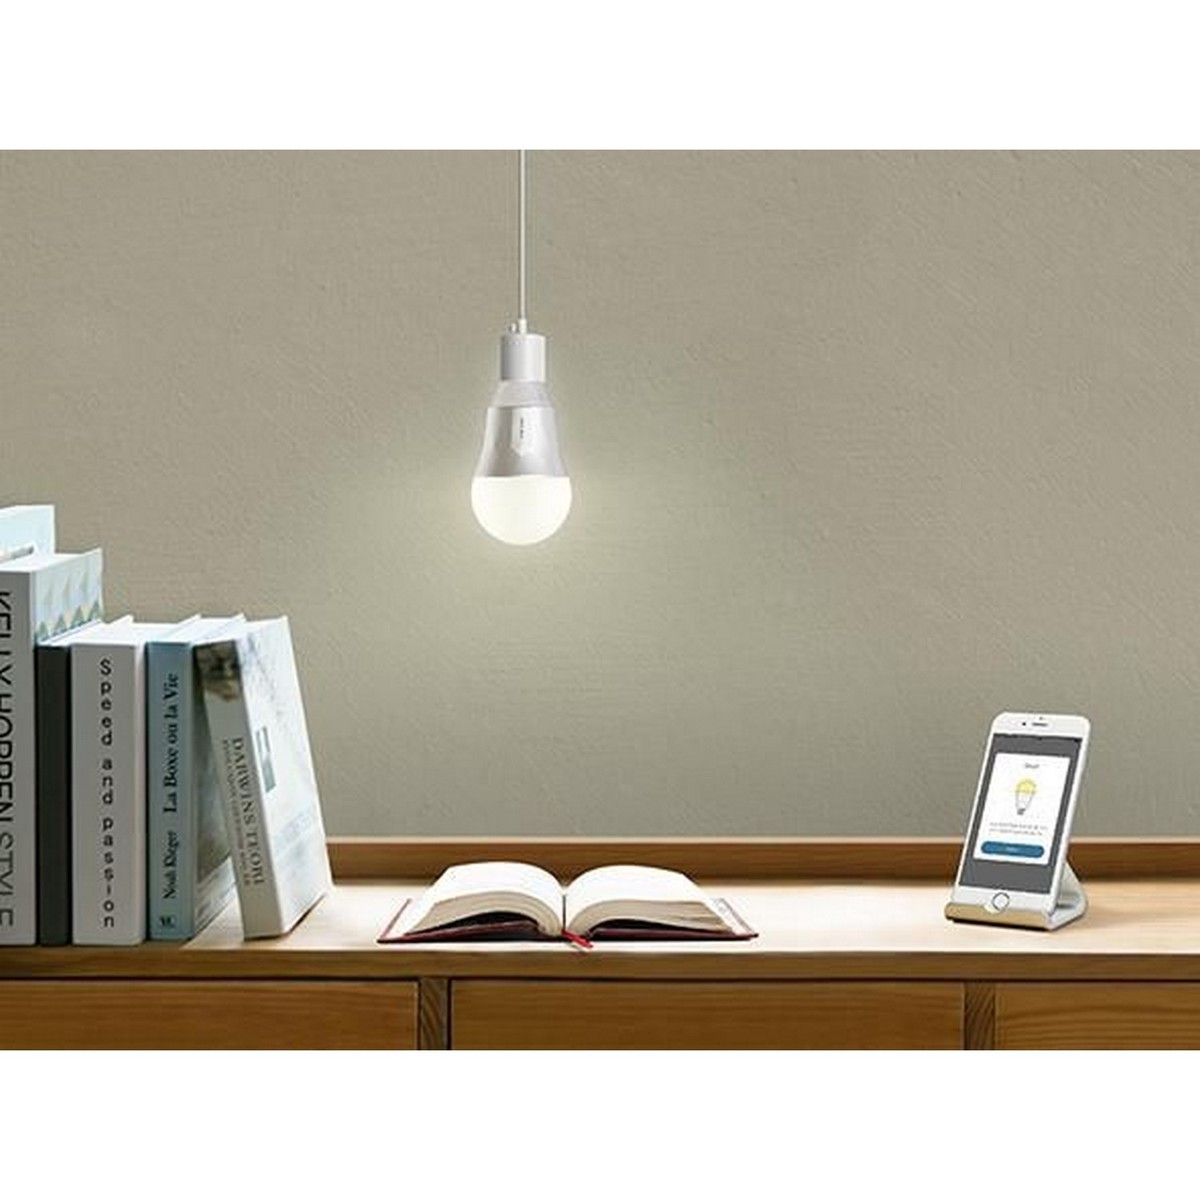 TPLink Smart Wi-Fi LED Light Bulb LB100